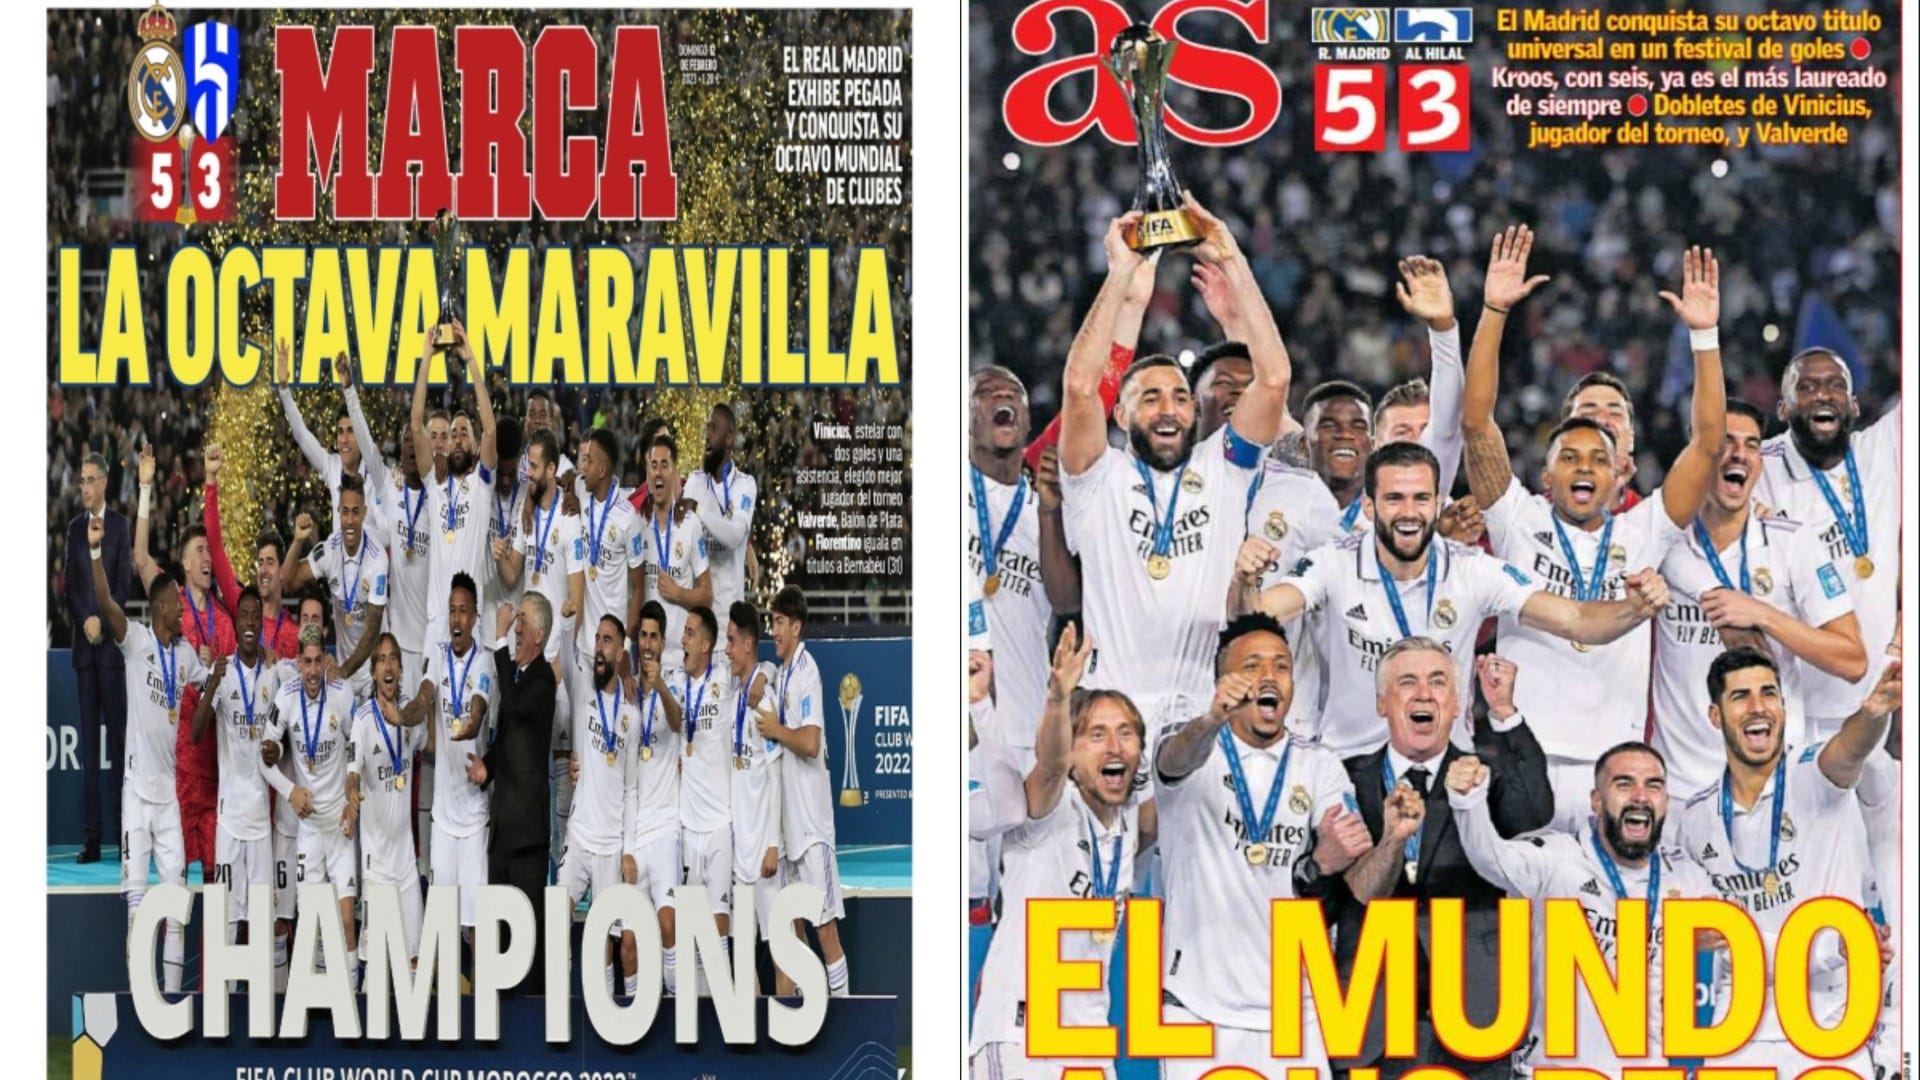 Las portadas de la prensa deportiva hoy 12 de febrero 2023: El Real Madrid,  rey del mundo del fútbol  Espana